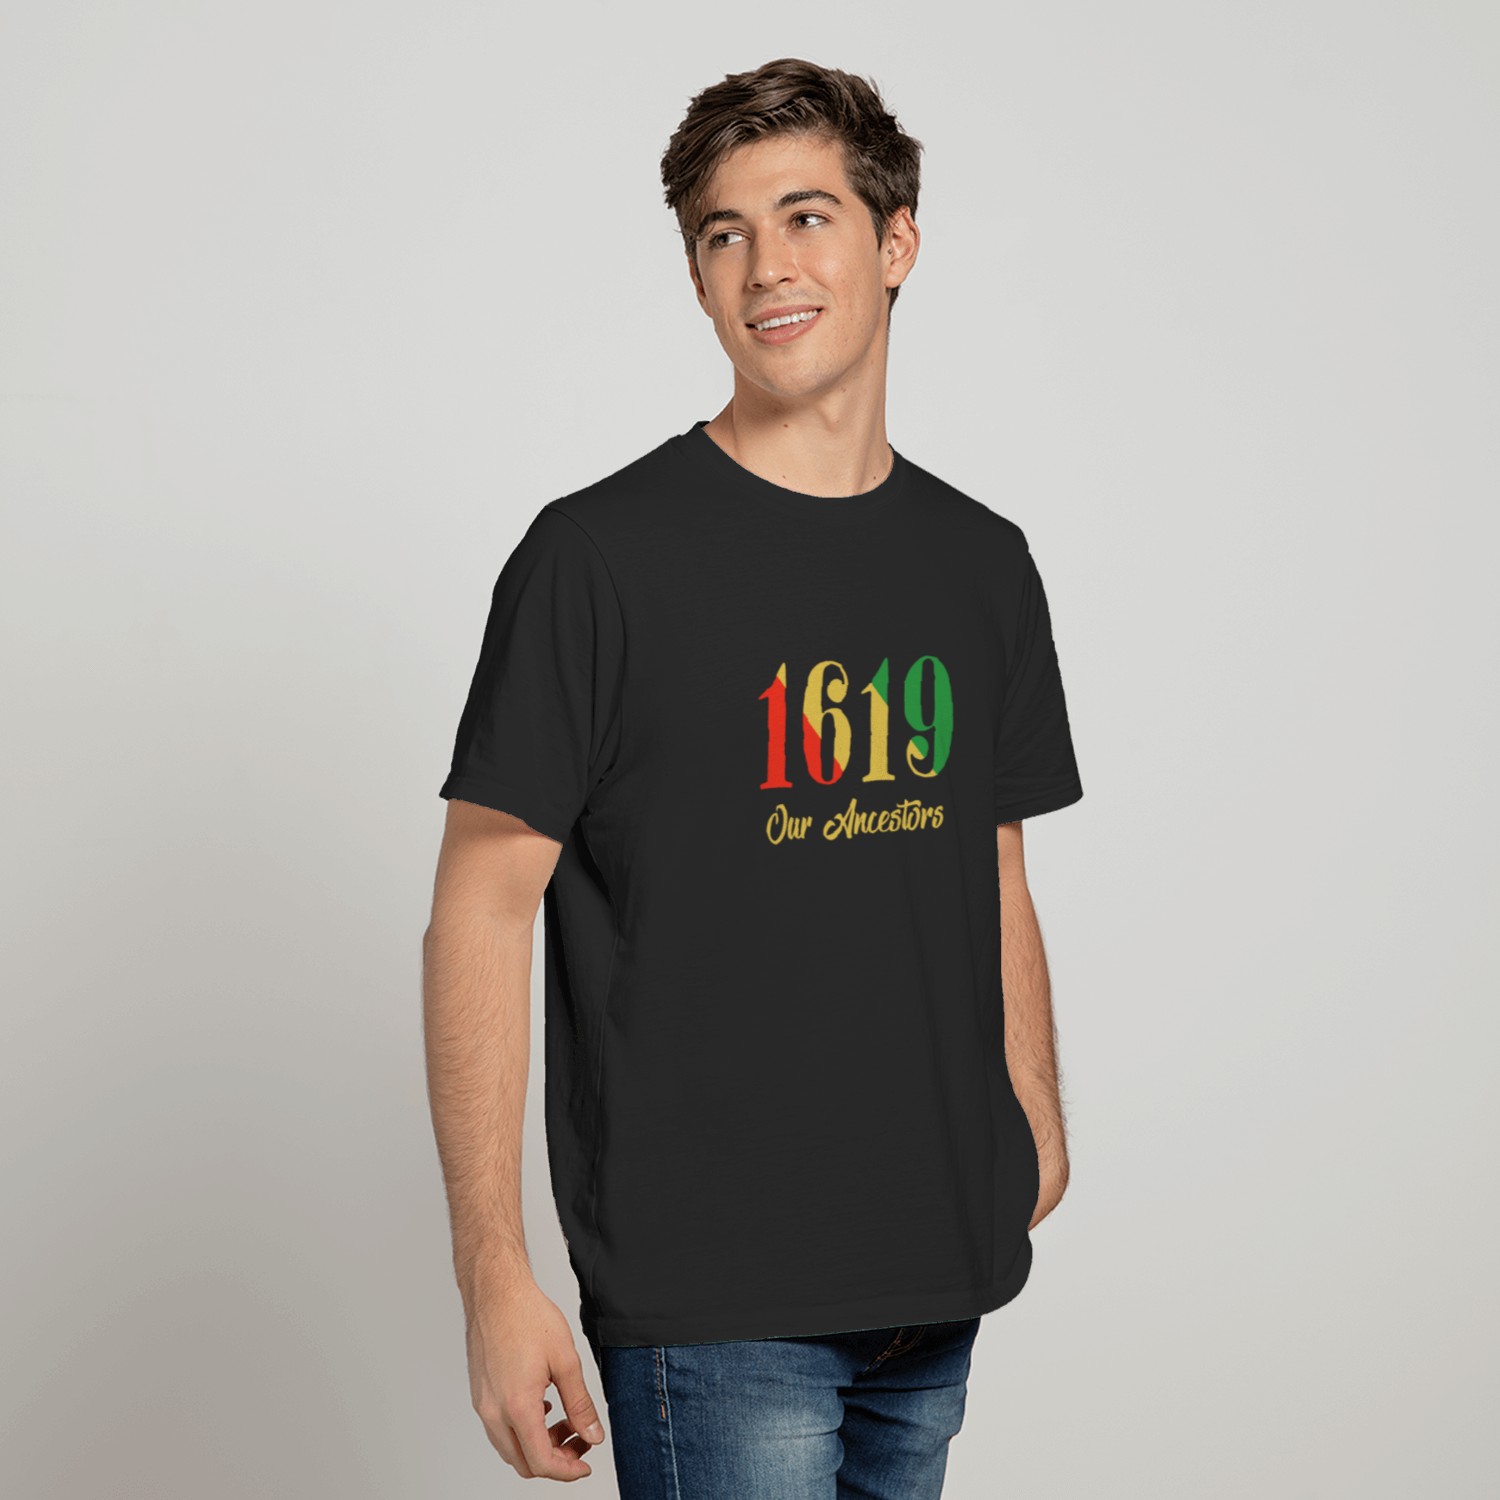 1619 Our Ancestors T-Shirt T-shirt